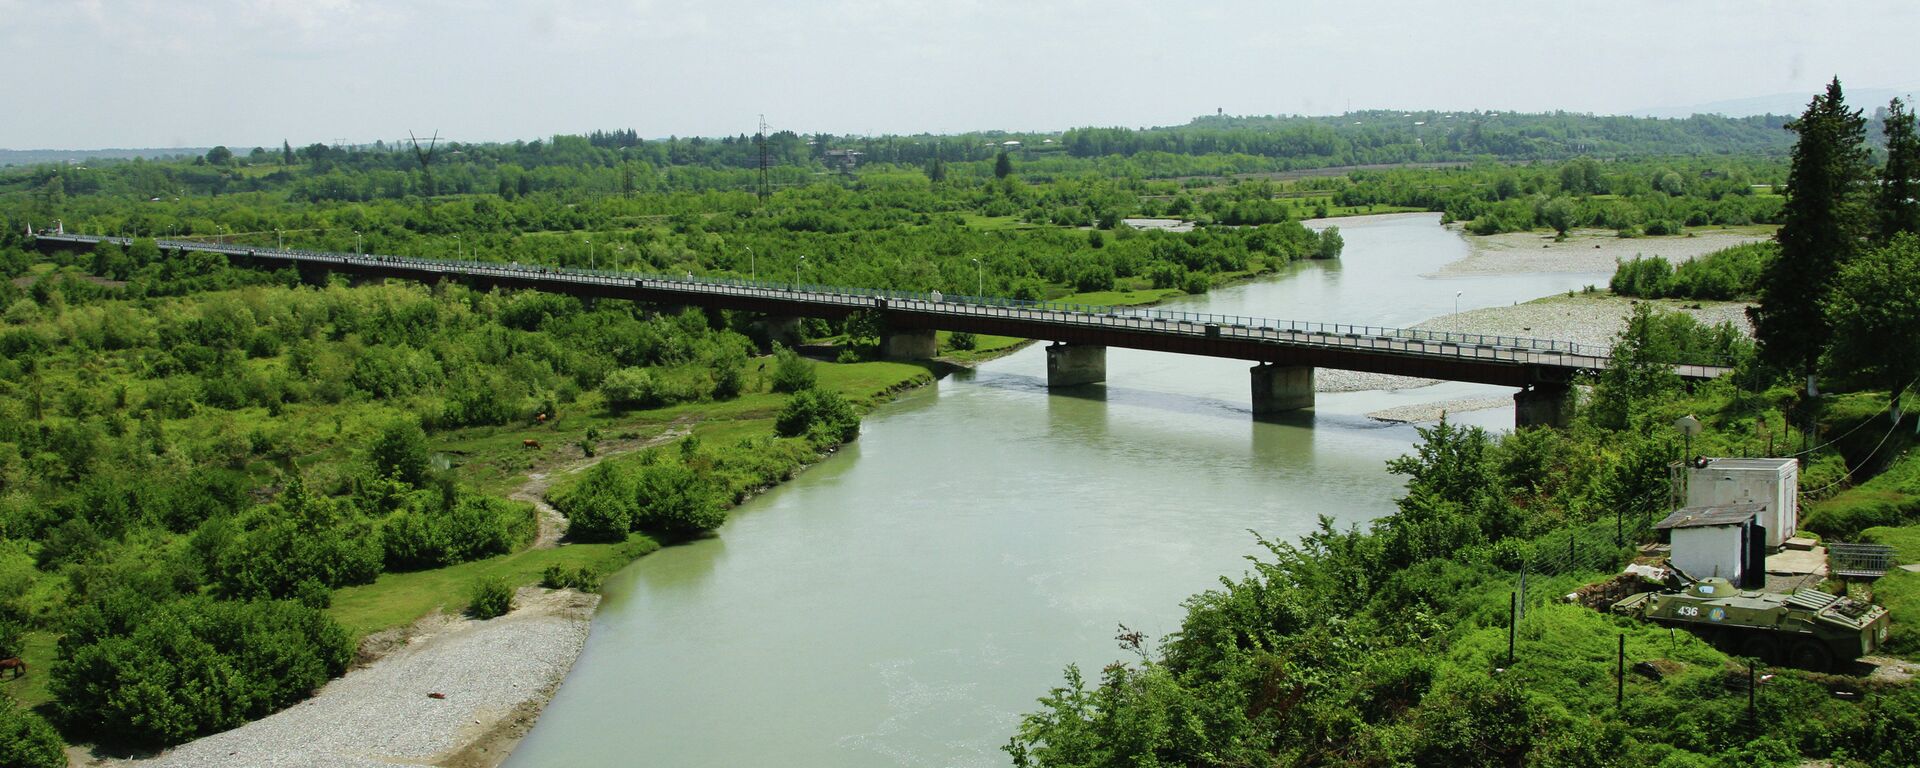 Мост на реке Ингур, соединяющий Грузию с Абхазией. Архивное фото. - Sputnik Абхазия, 1920, 07.04.2021